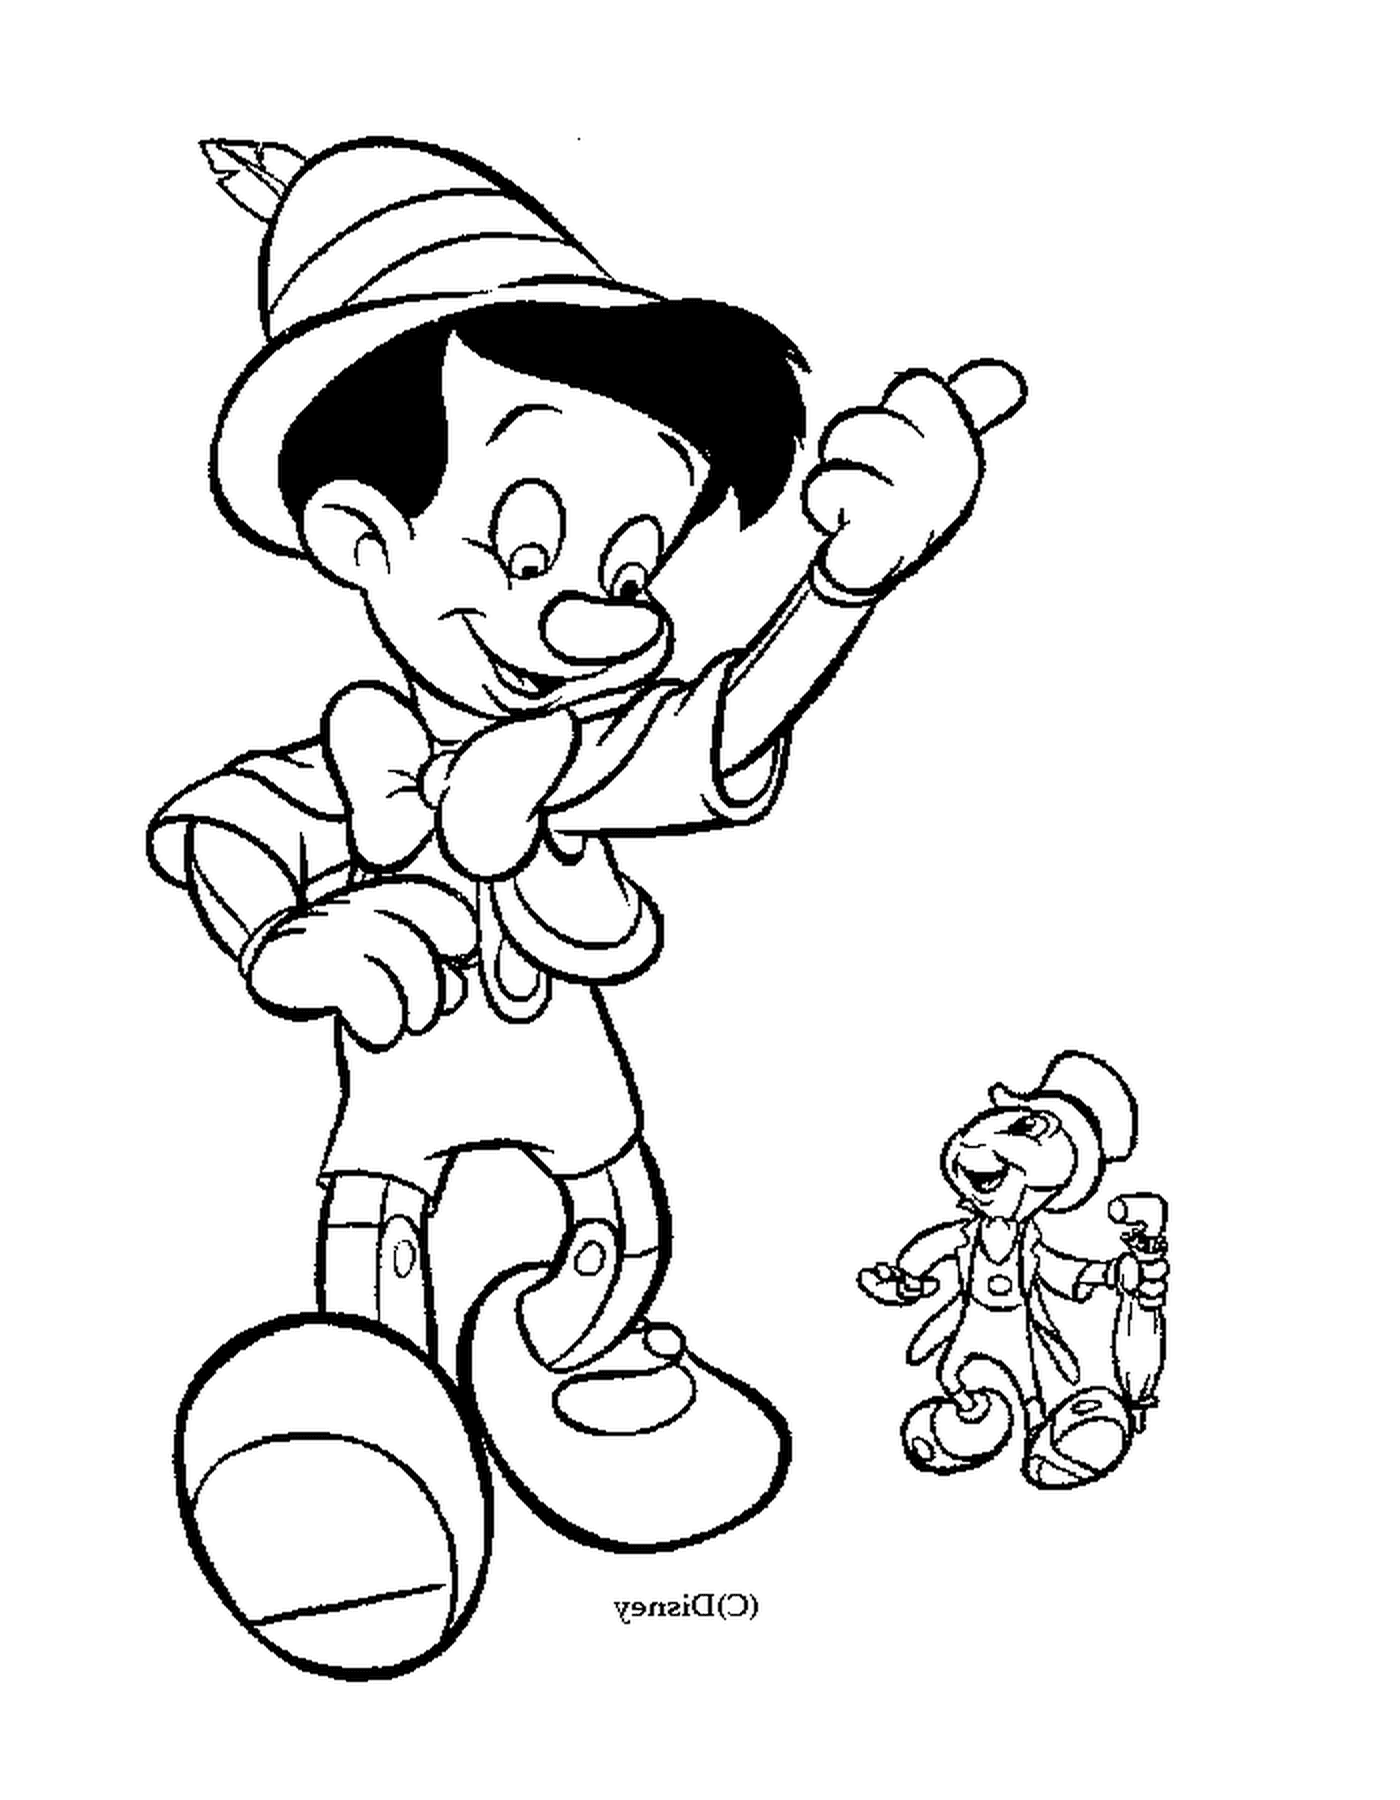  皮诺曹和杰米尼的朋友 